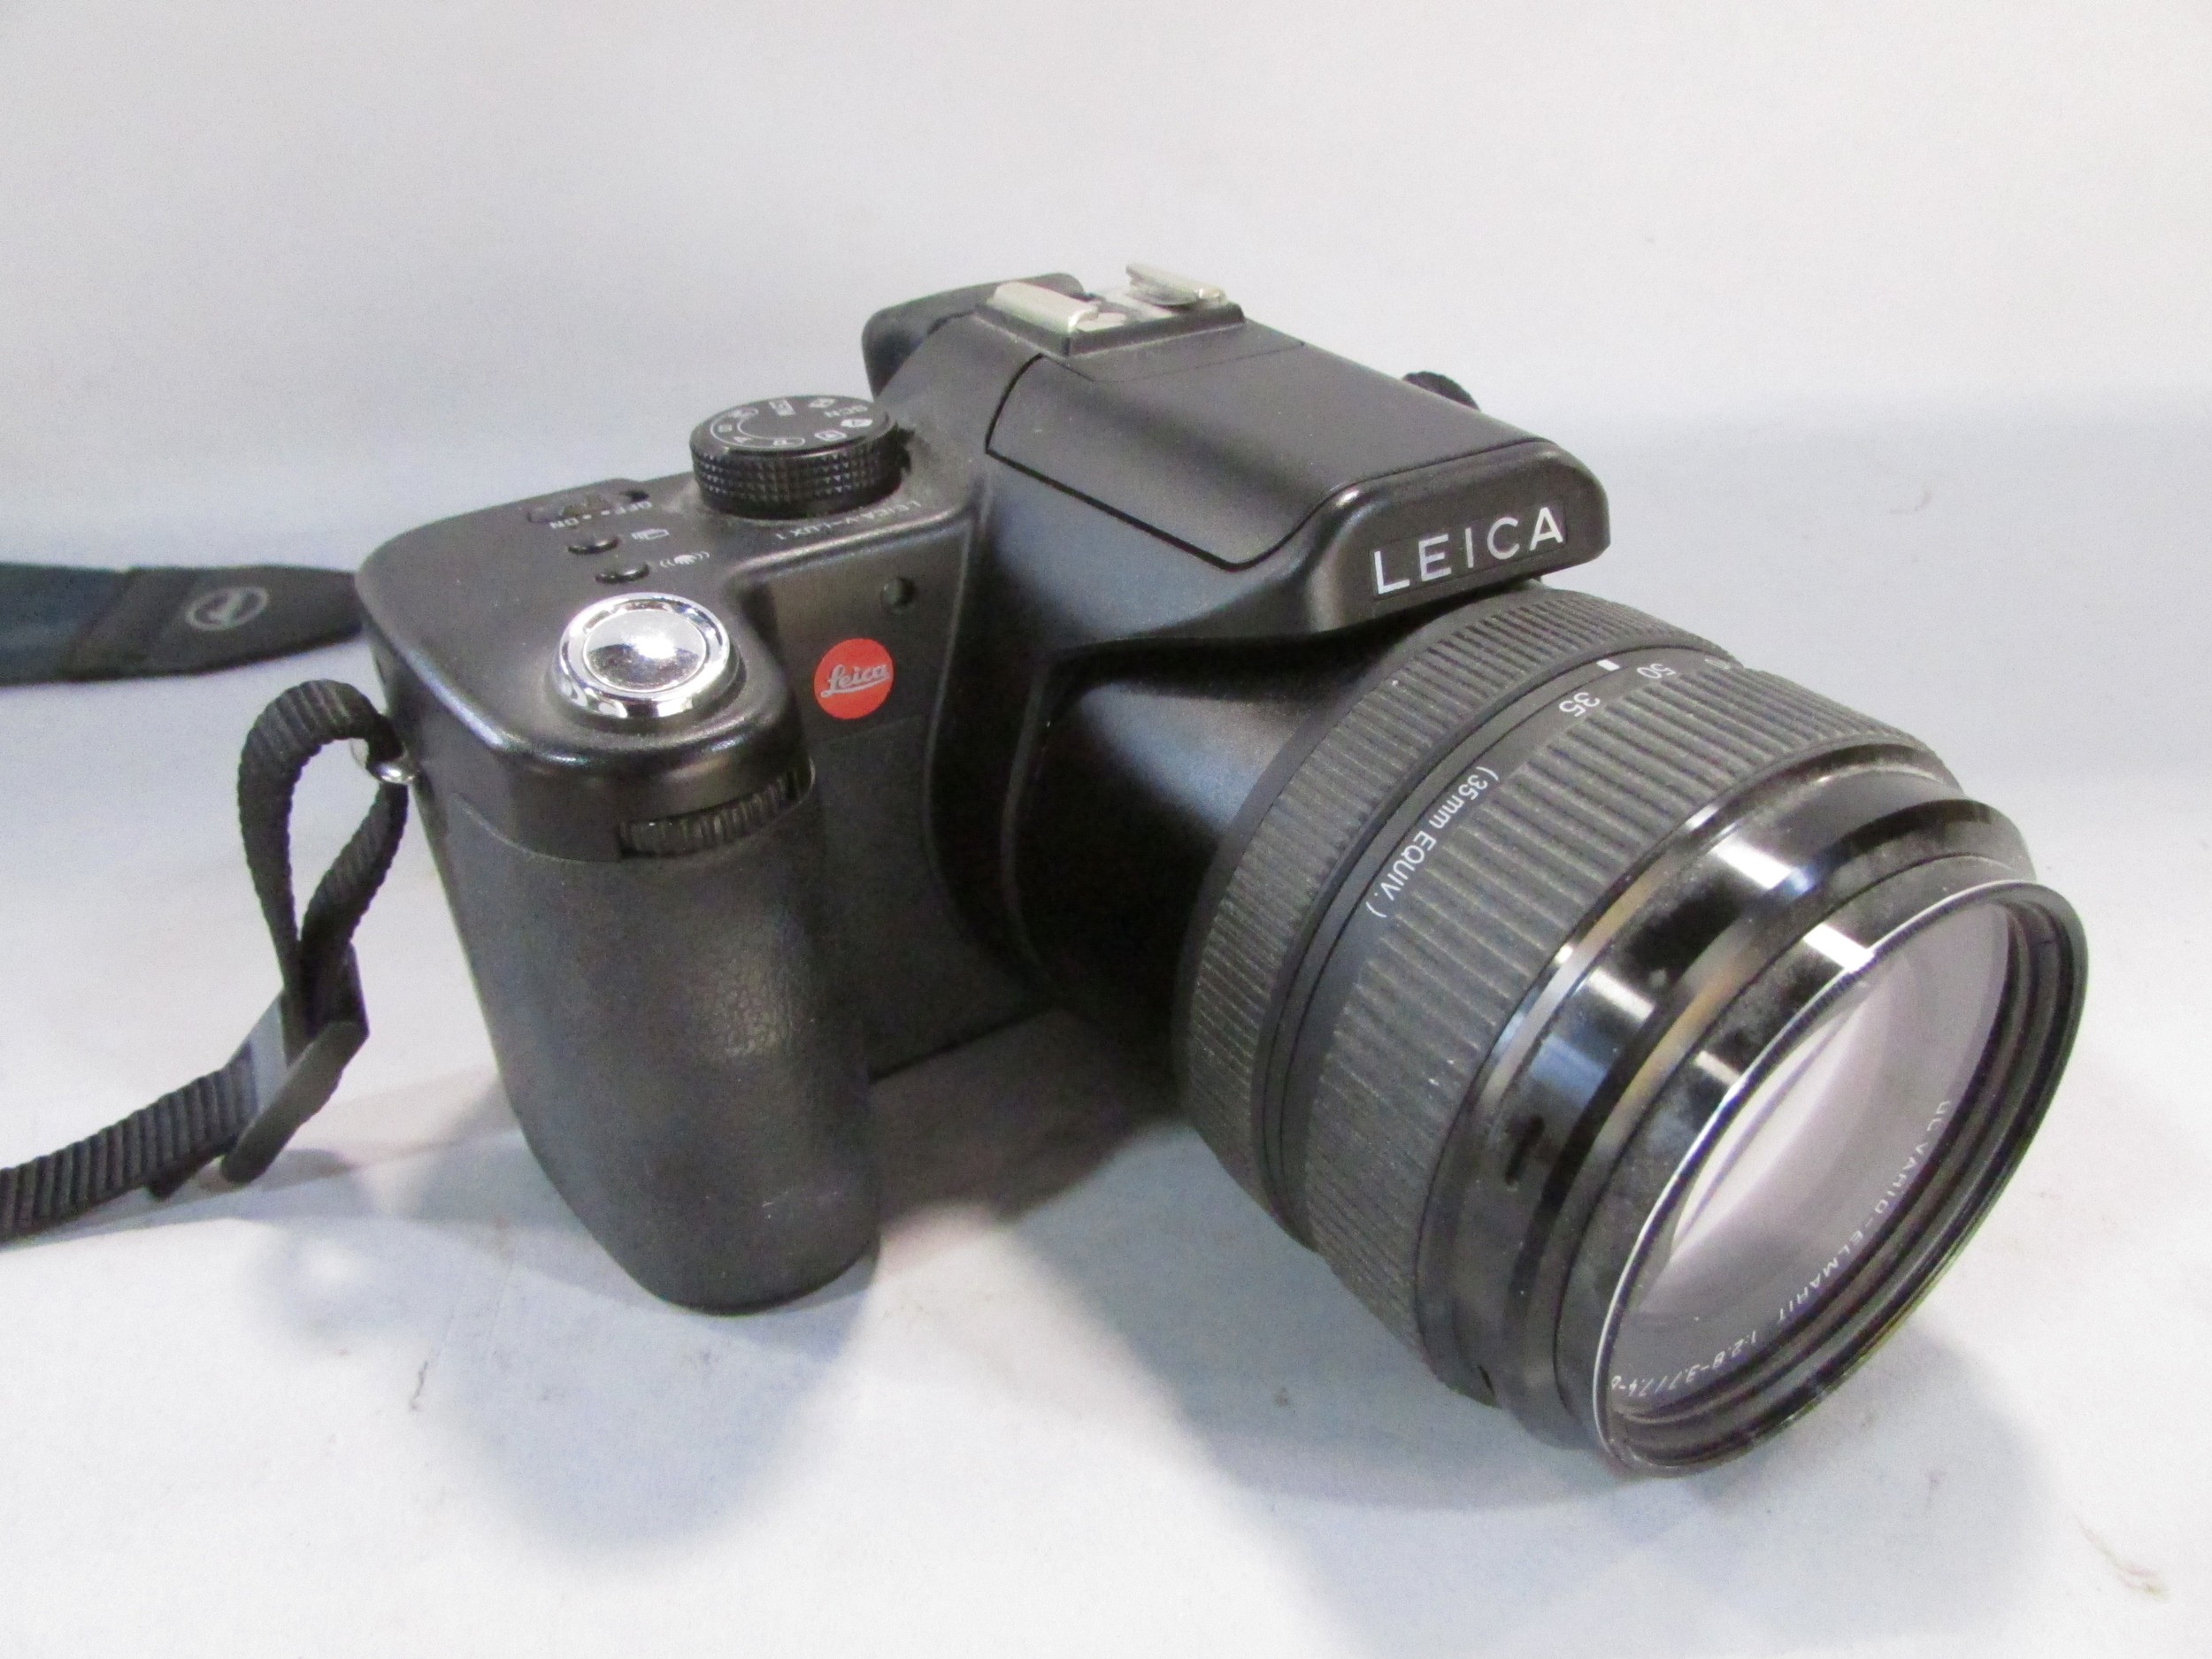 A Leica V Lux 1 camera